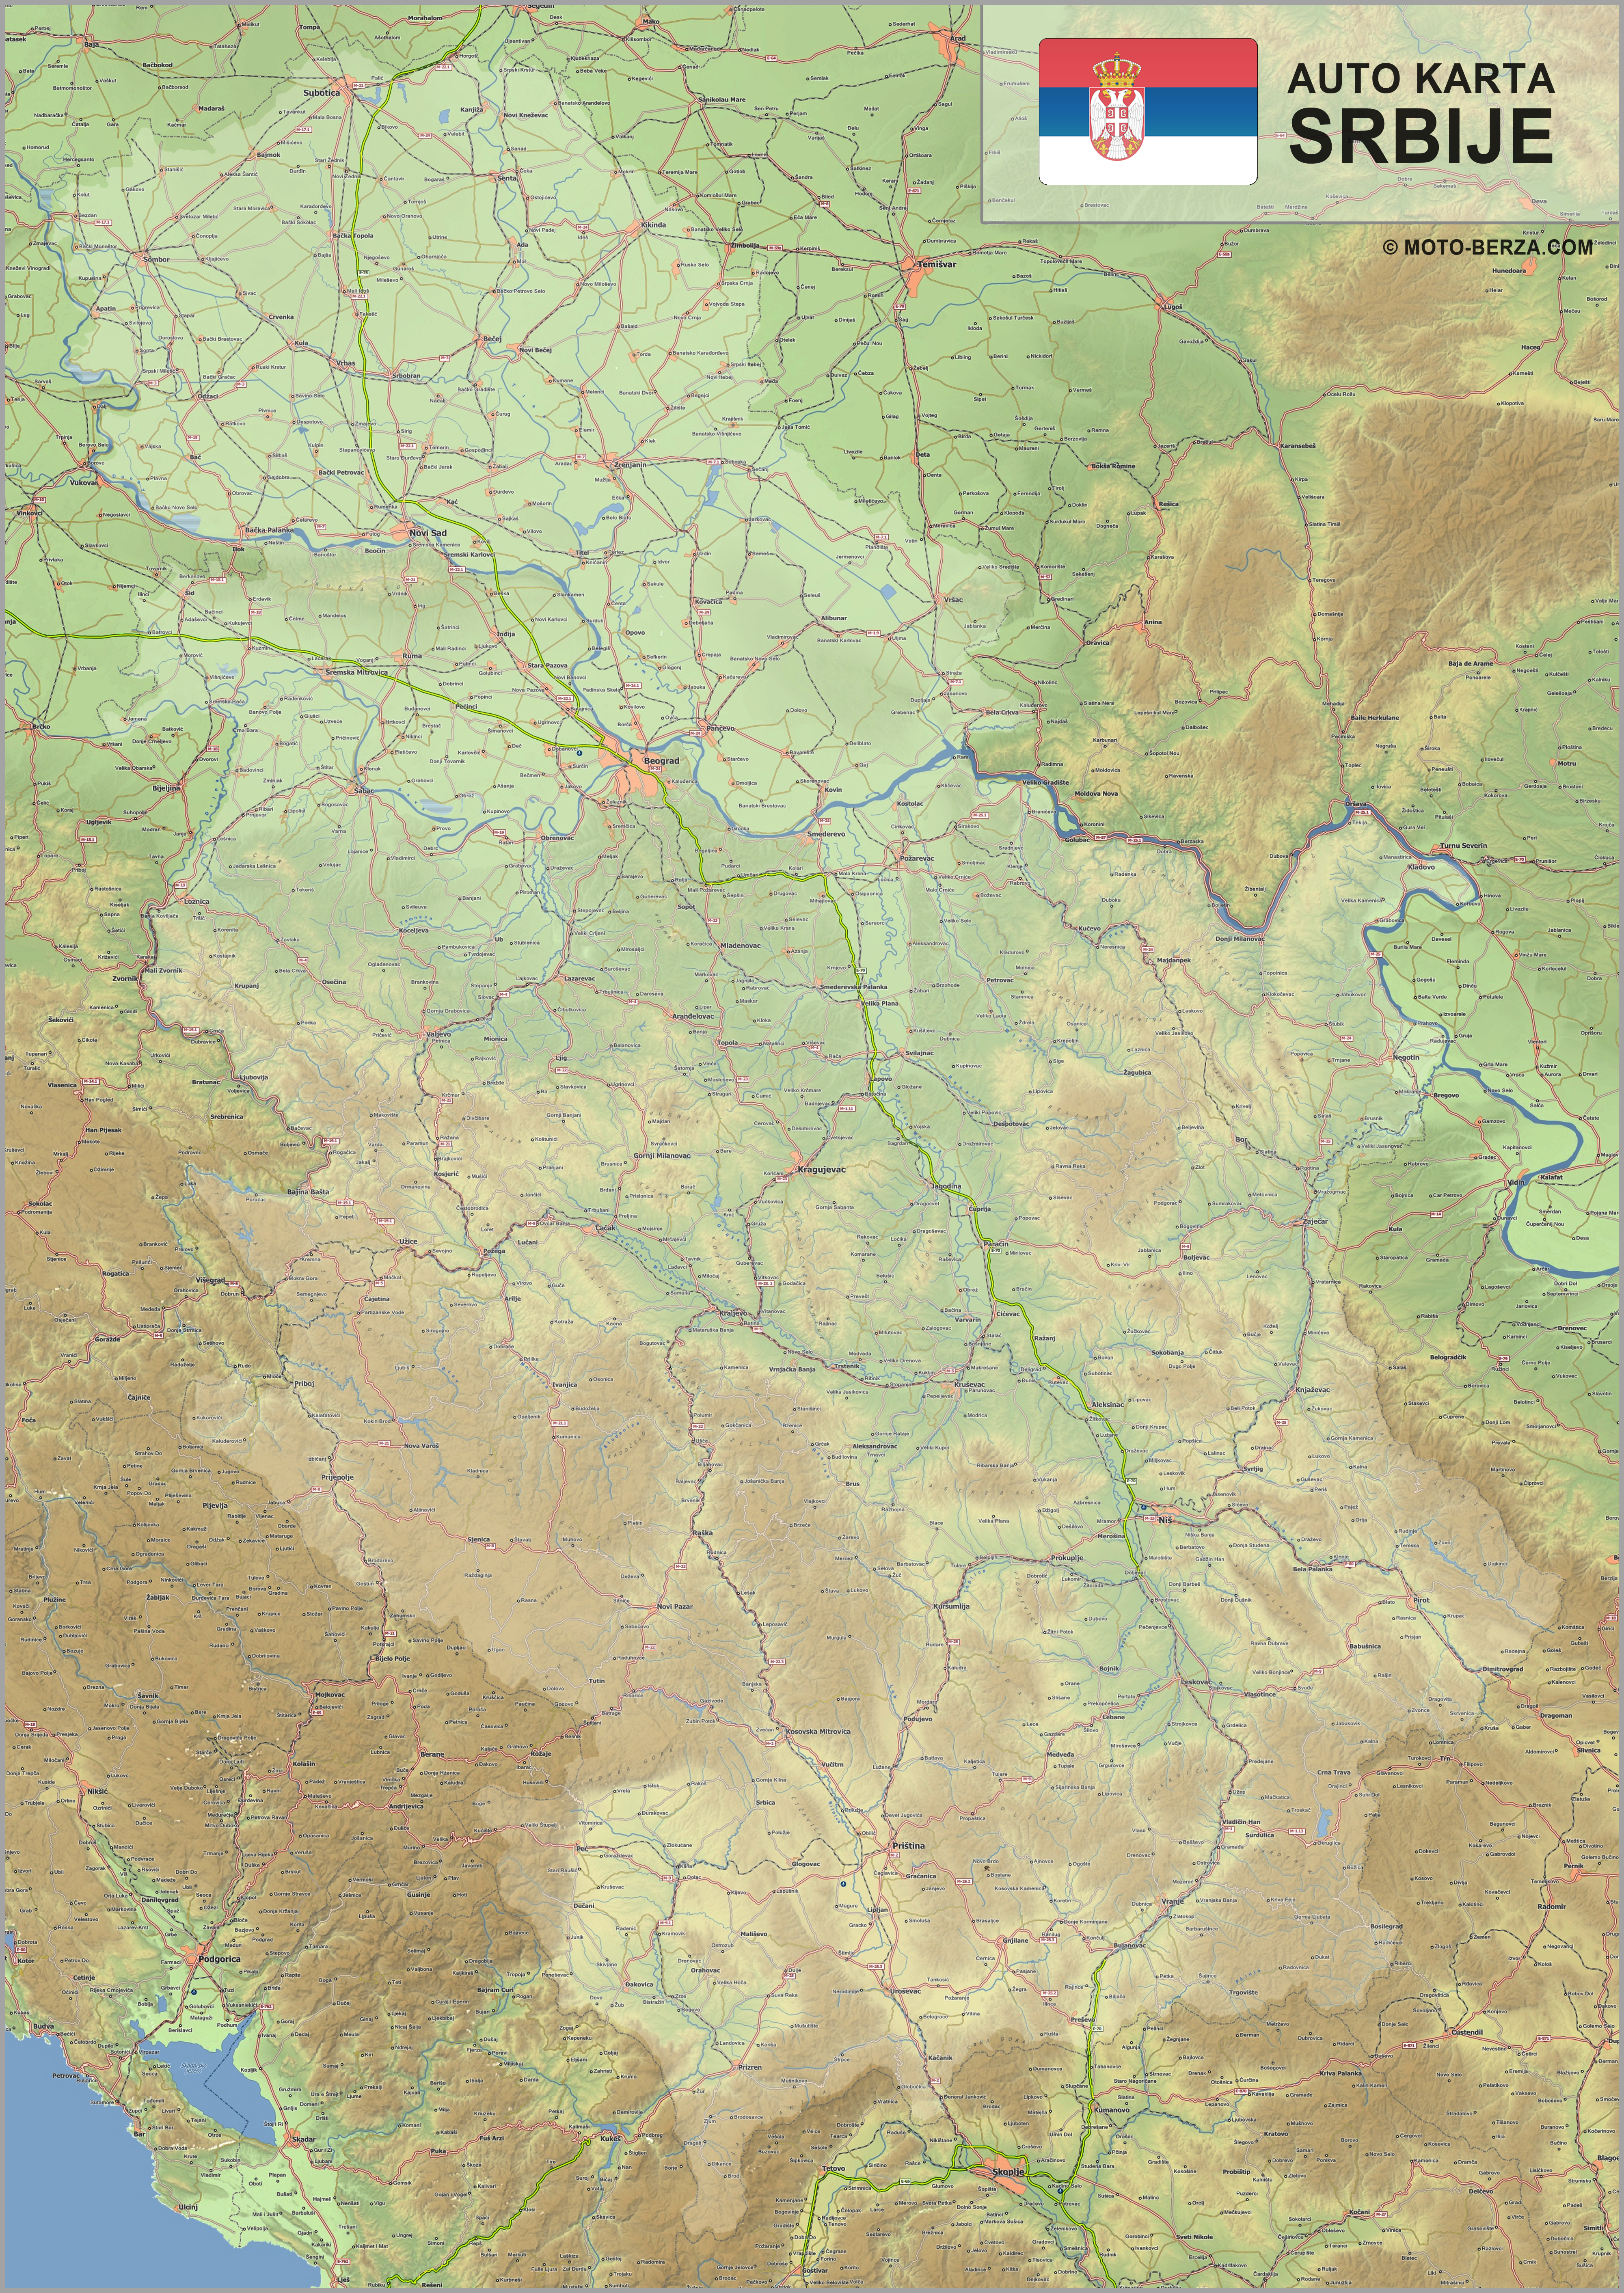 mapa srbije digitalna Mapa srbije   Auto karta Srbije   Geografska karta sa putevima mapa srbije digitalna